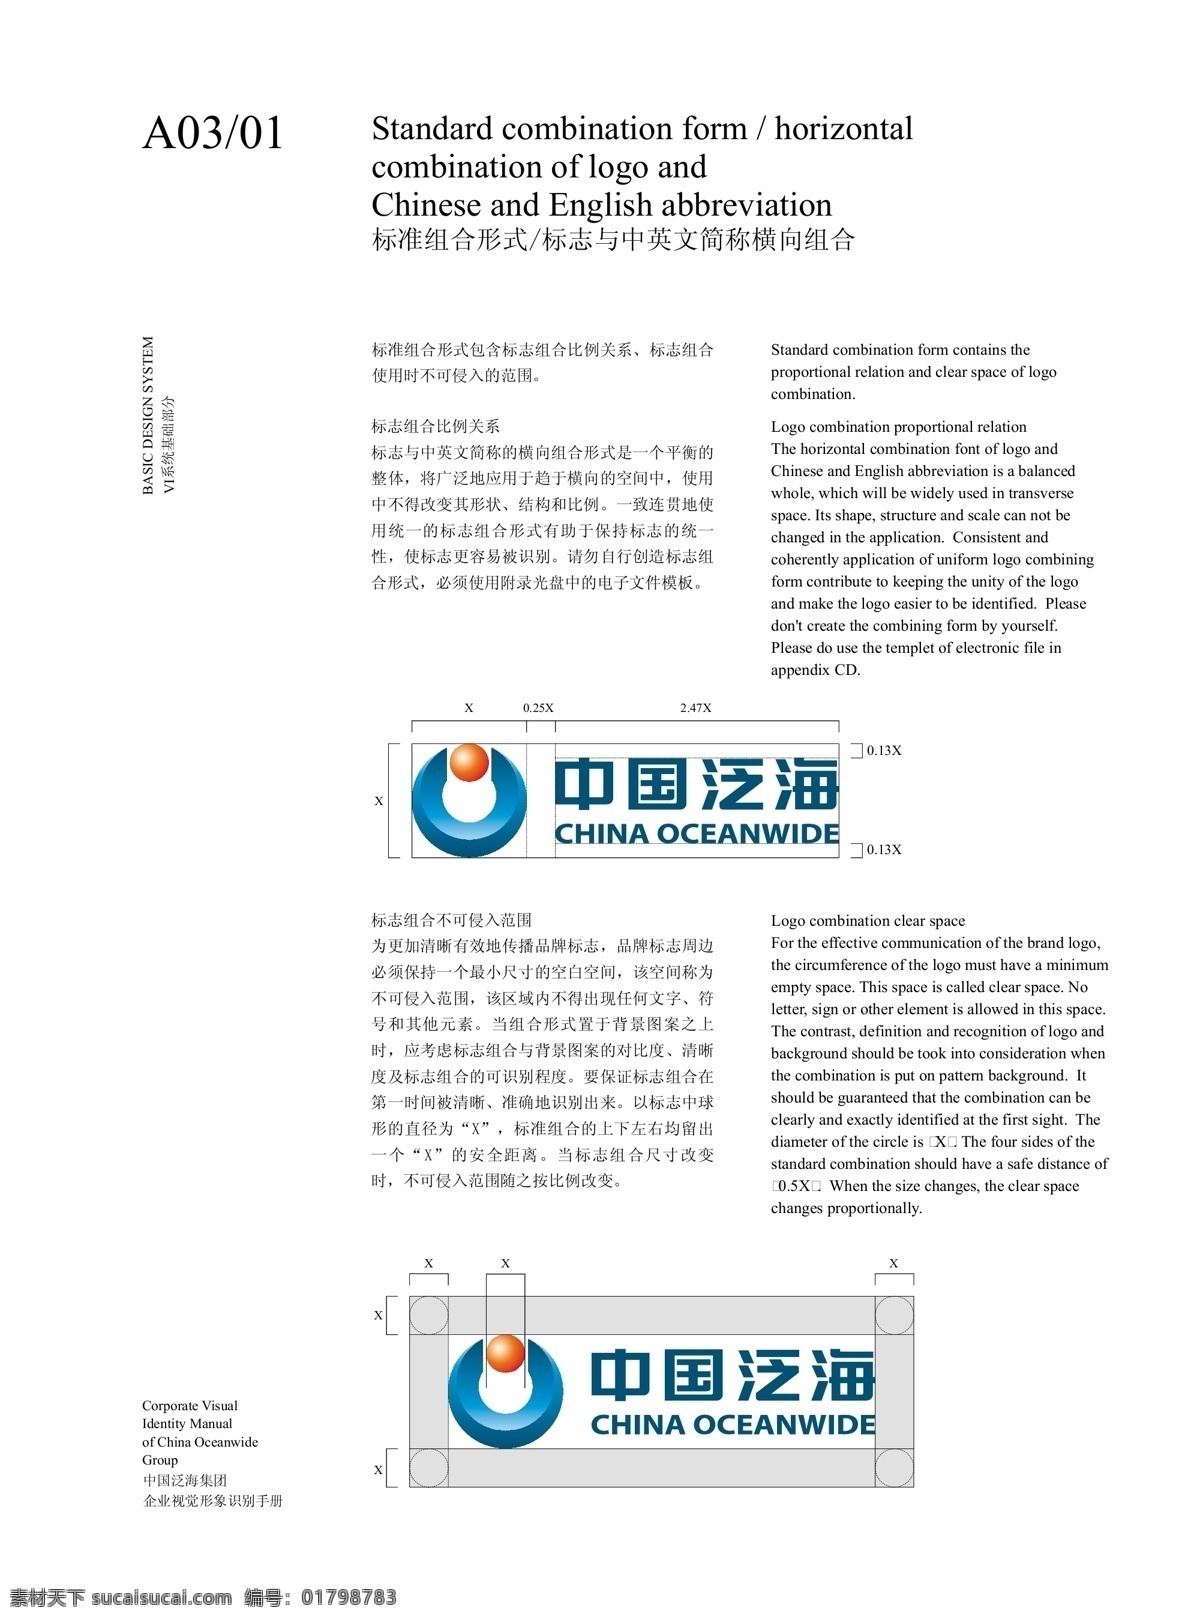 vi设计 中国 泛 海 基础 vi 系统 logo 标准 标准组合形式 标志 中英文 简称 纵向 组合 ai矢量文件 集合 大全 矢量 矢量图 建筑家居